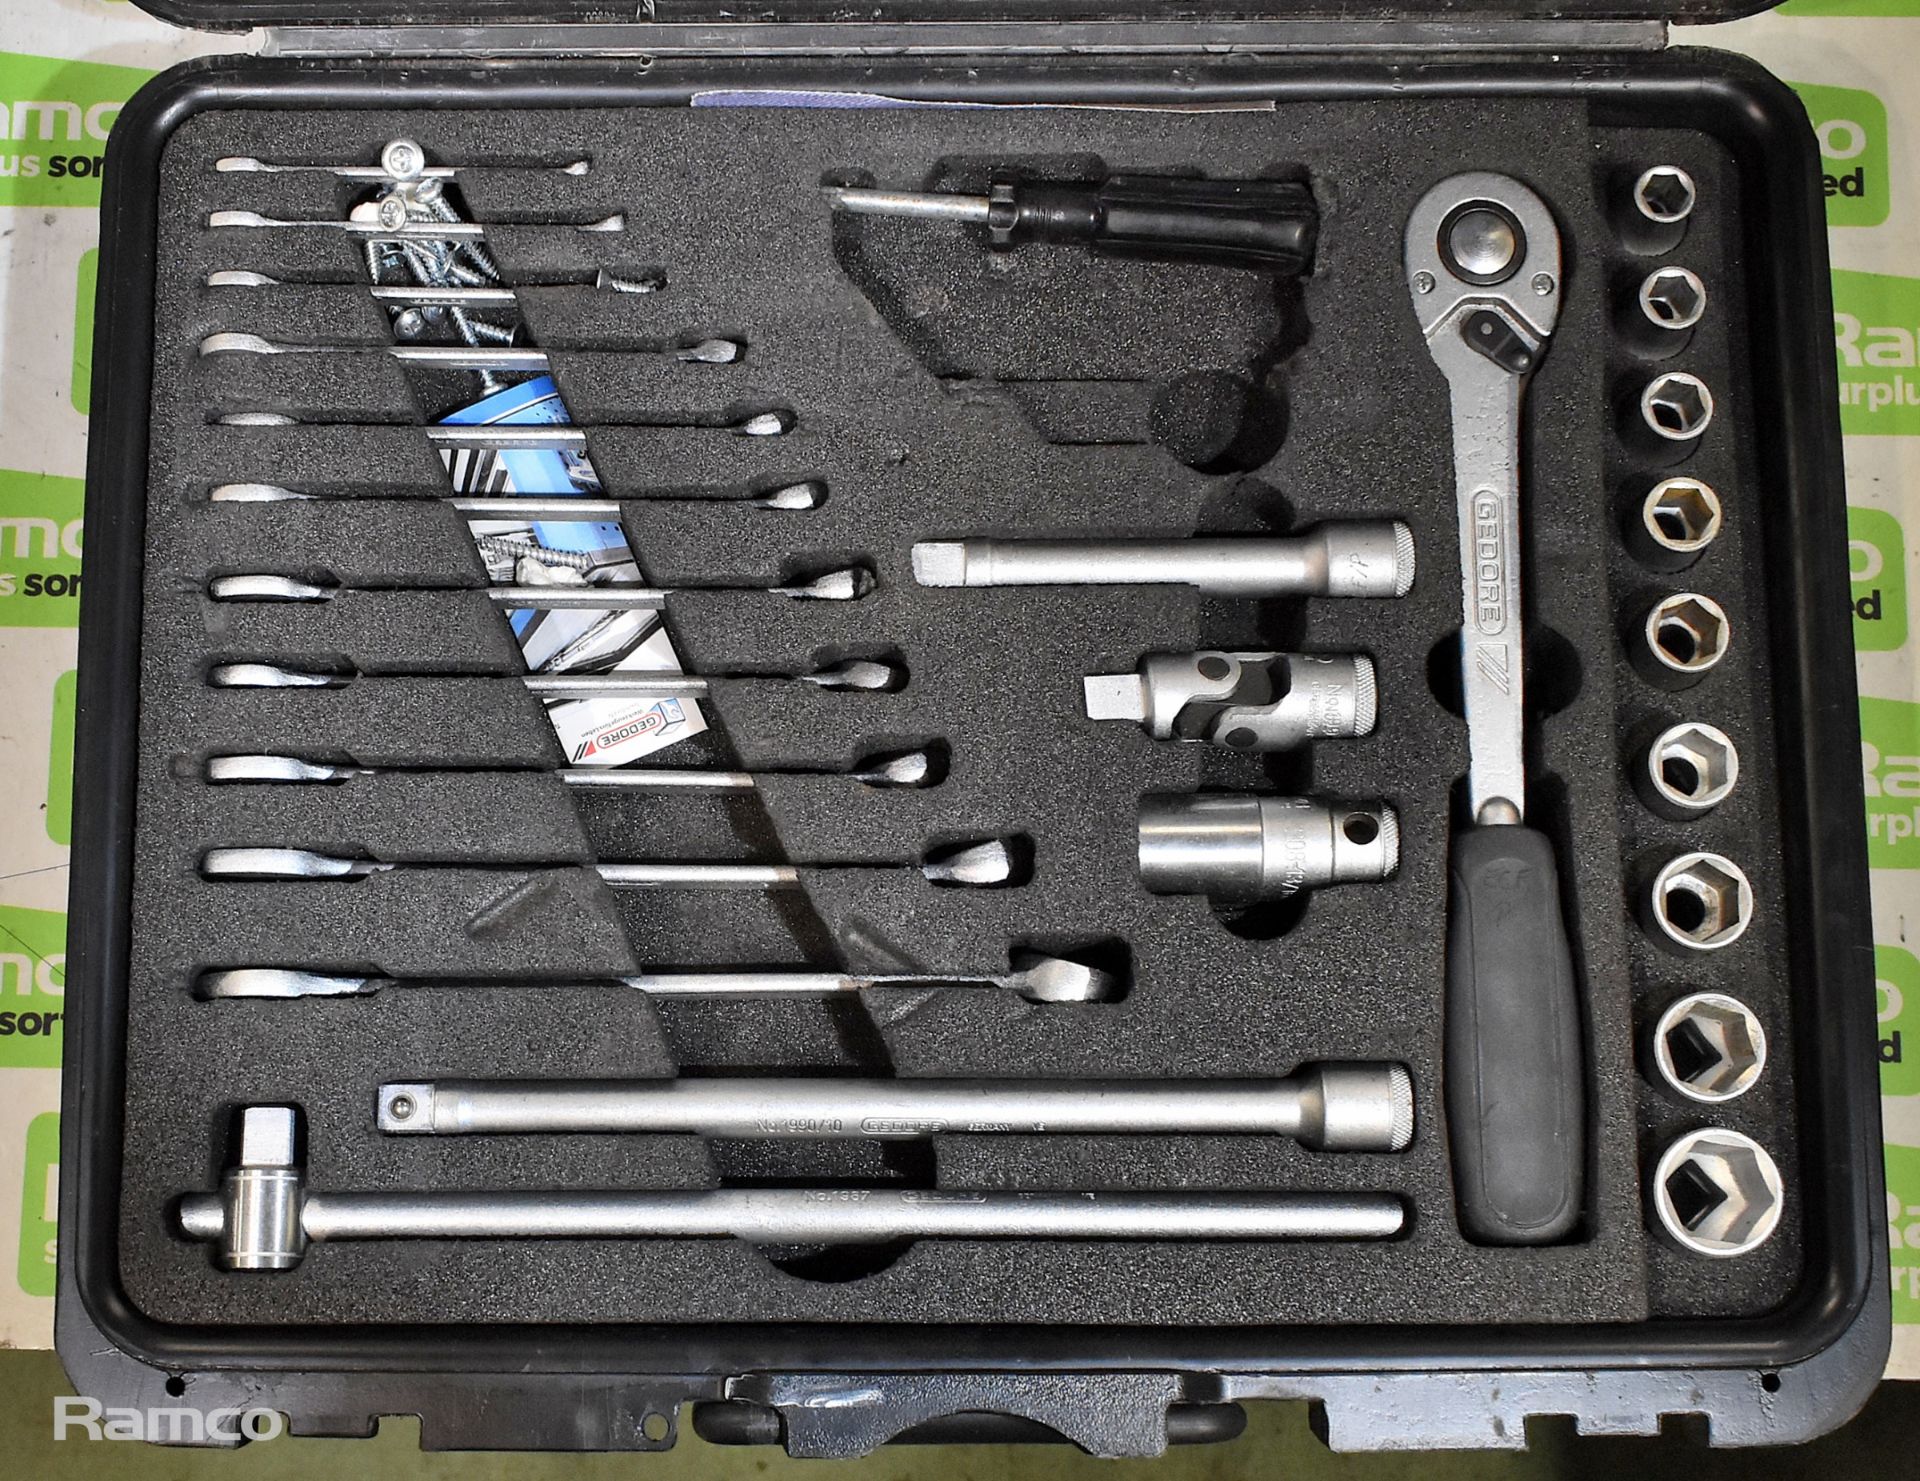 Gedore Touring 1000 tool kit - Image 3 of 6